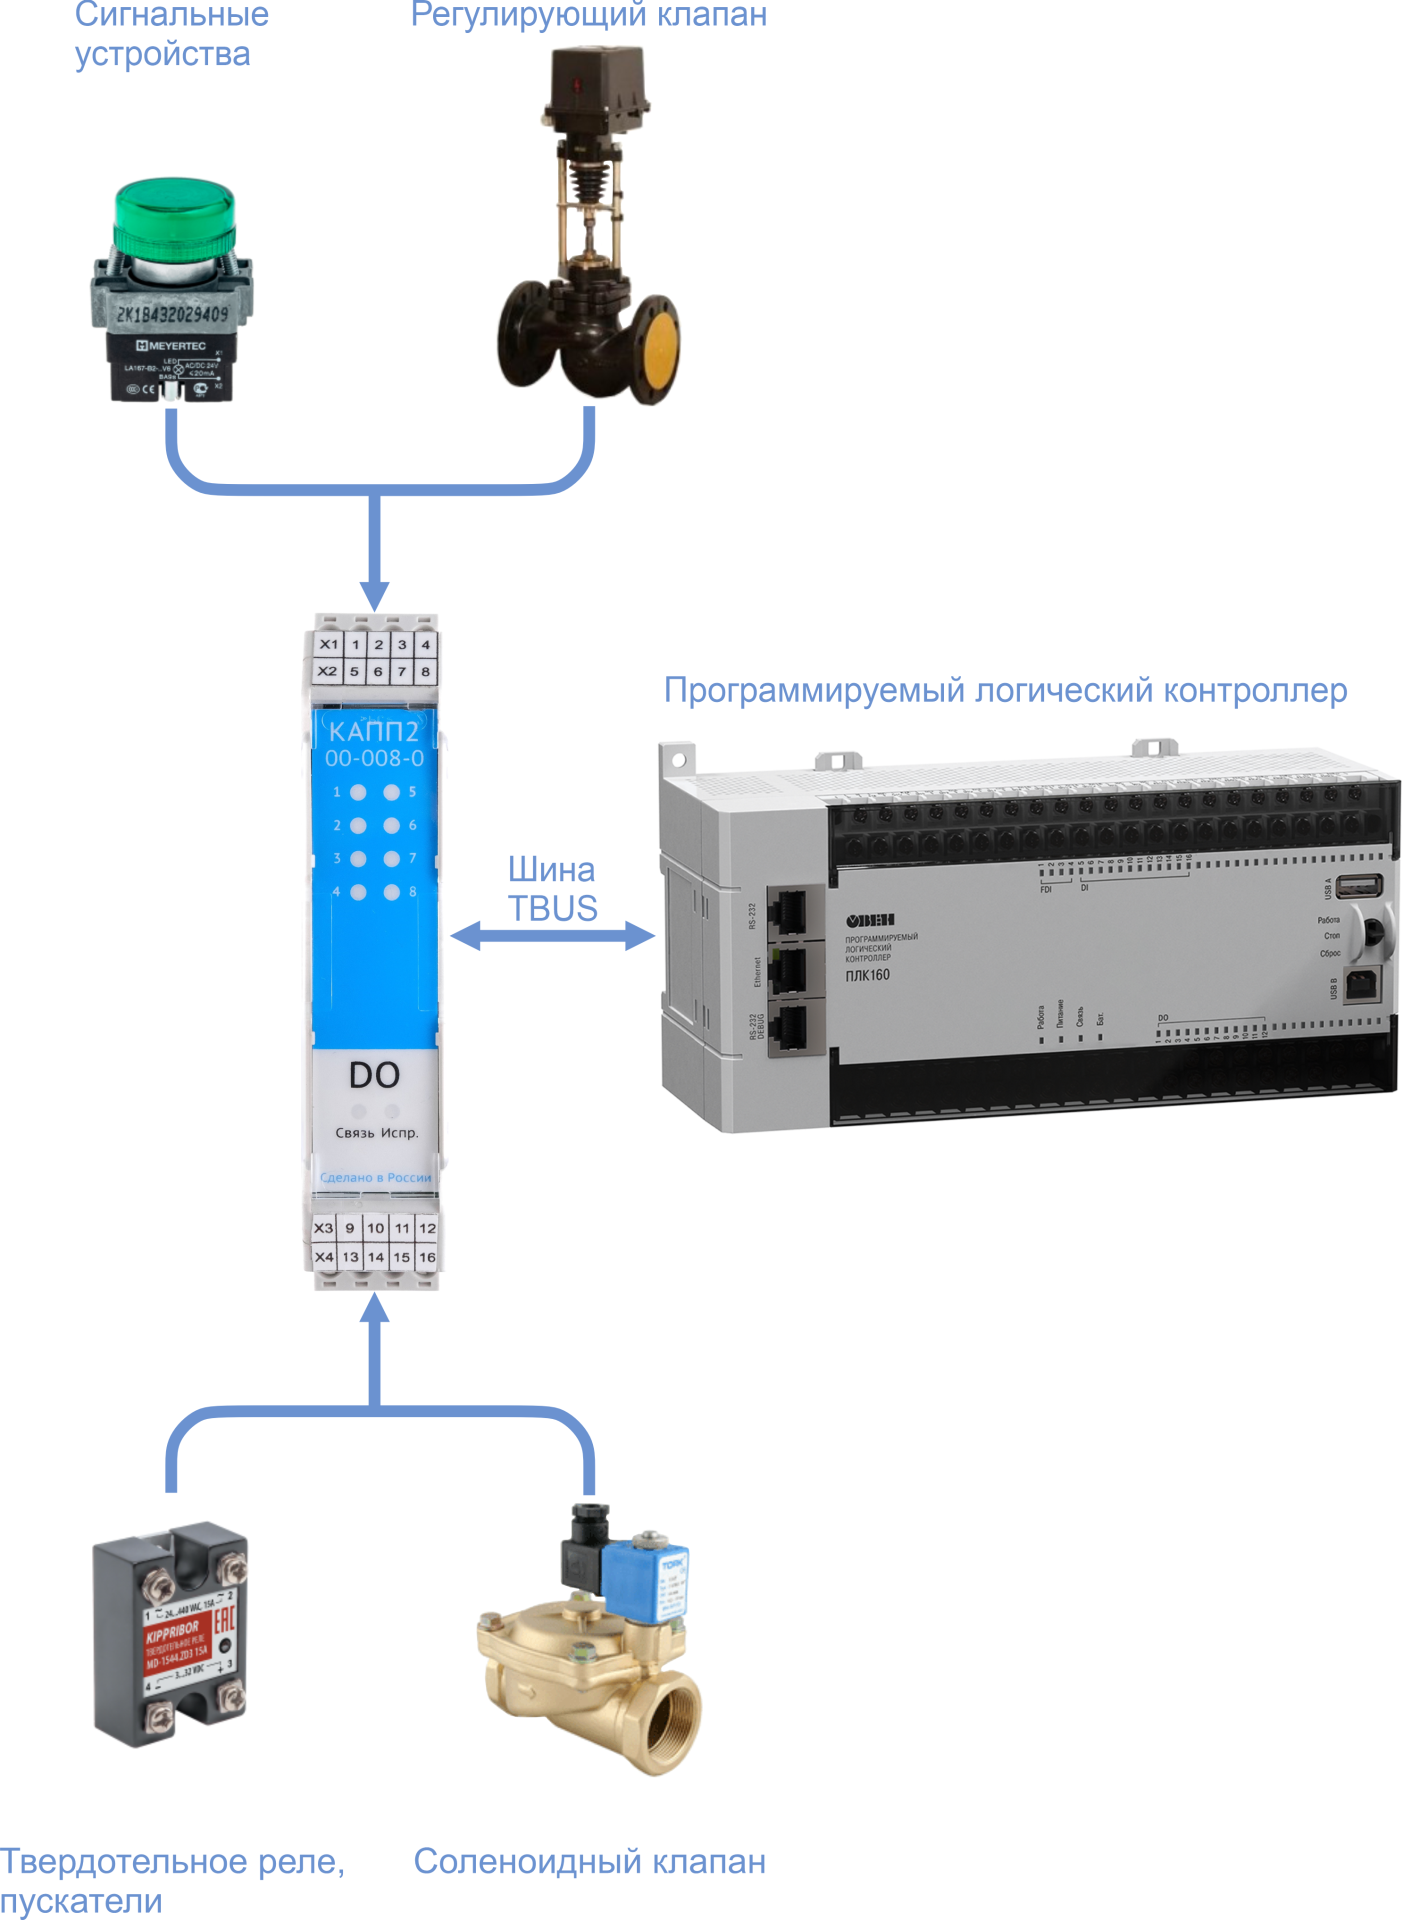 Подключение сигнализаторов и исполнительных механизмов к модулю ERGON КАПП2-00-008-0